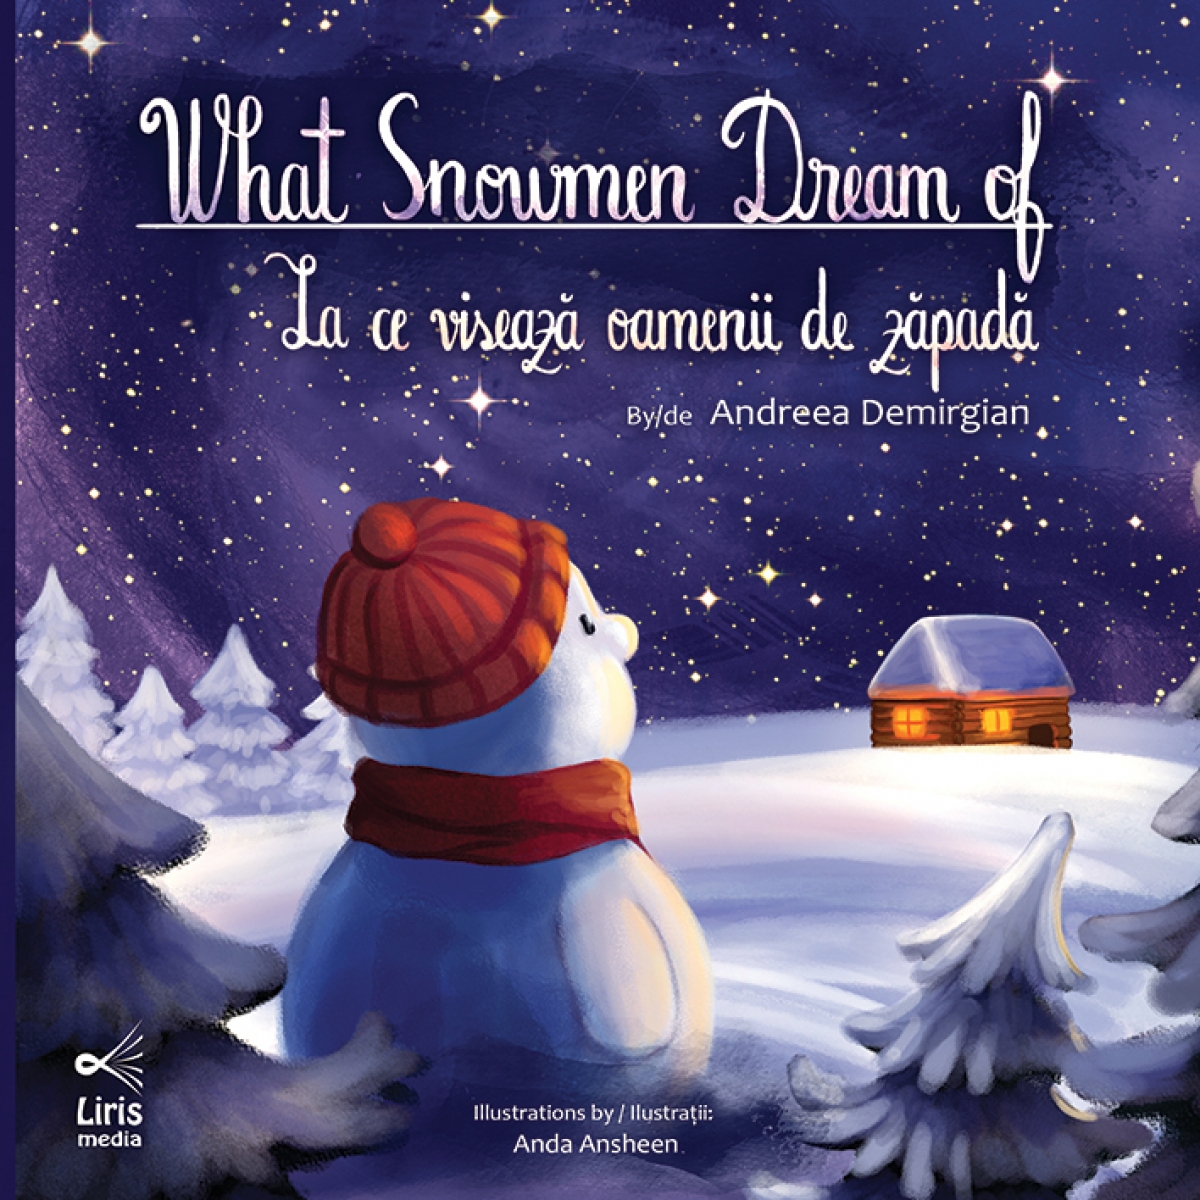 Lansare de carte: "La ce visează oamenii de zăpadă”, ediţie ilustrată, bilingvă română-engleză